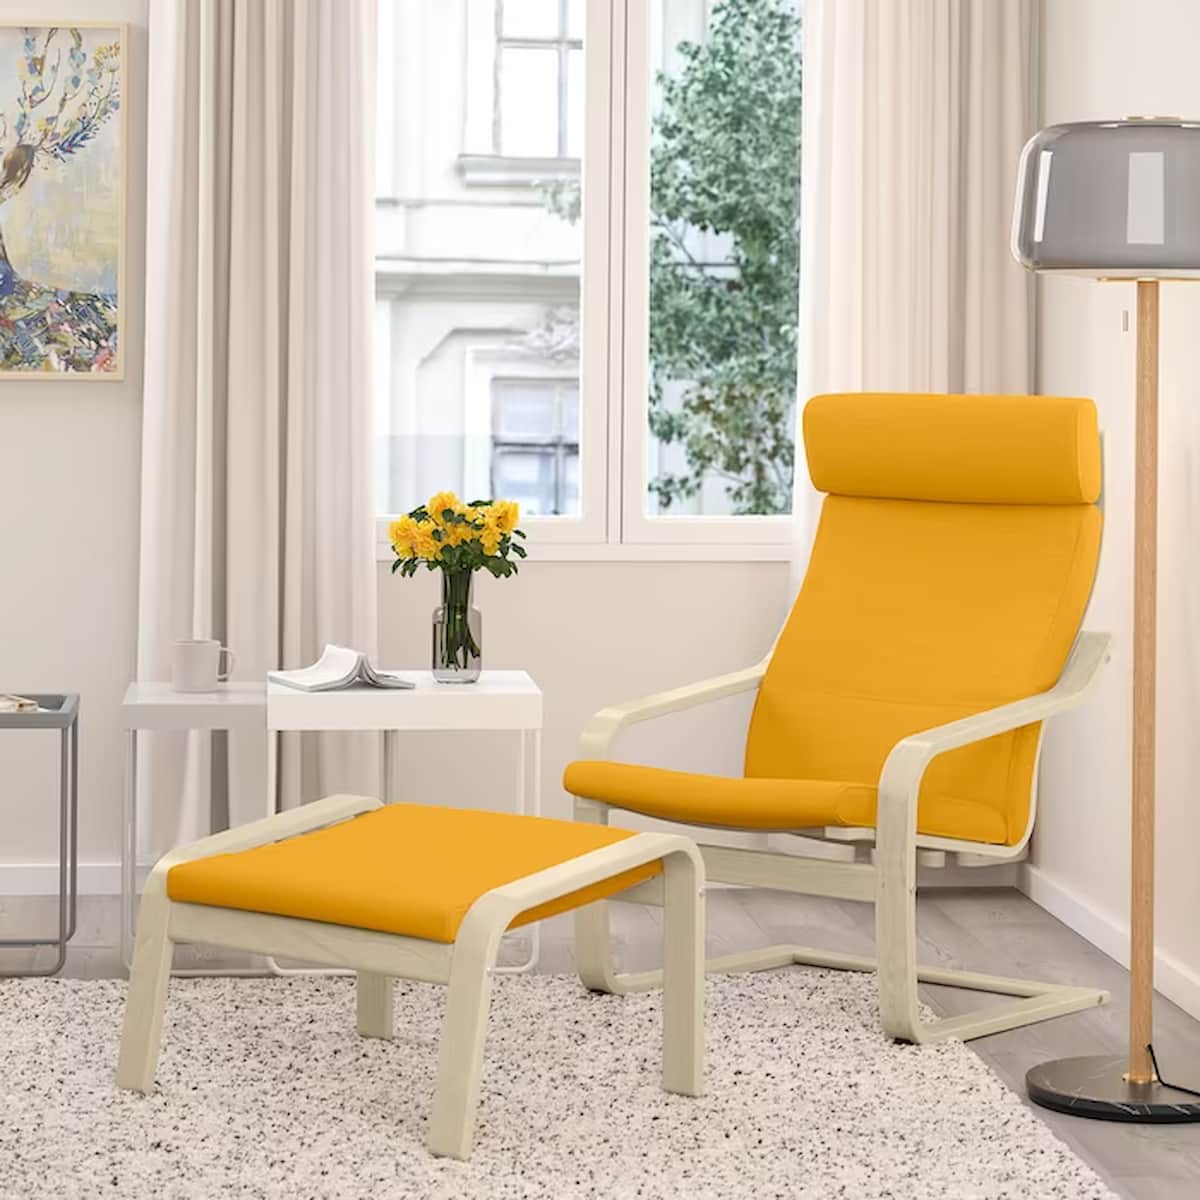 IKEA POÄNG chair review - Eternally chic?